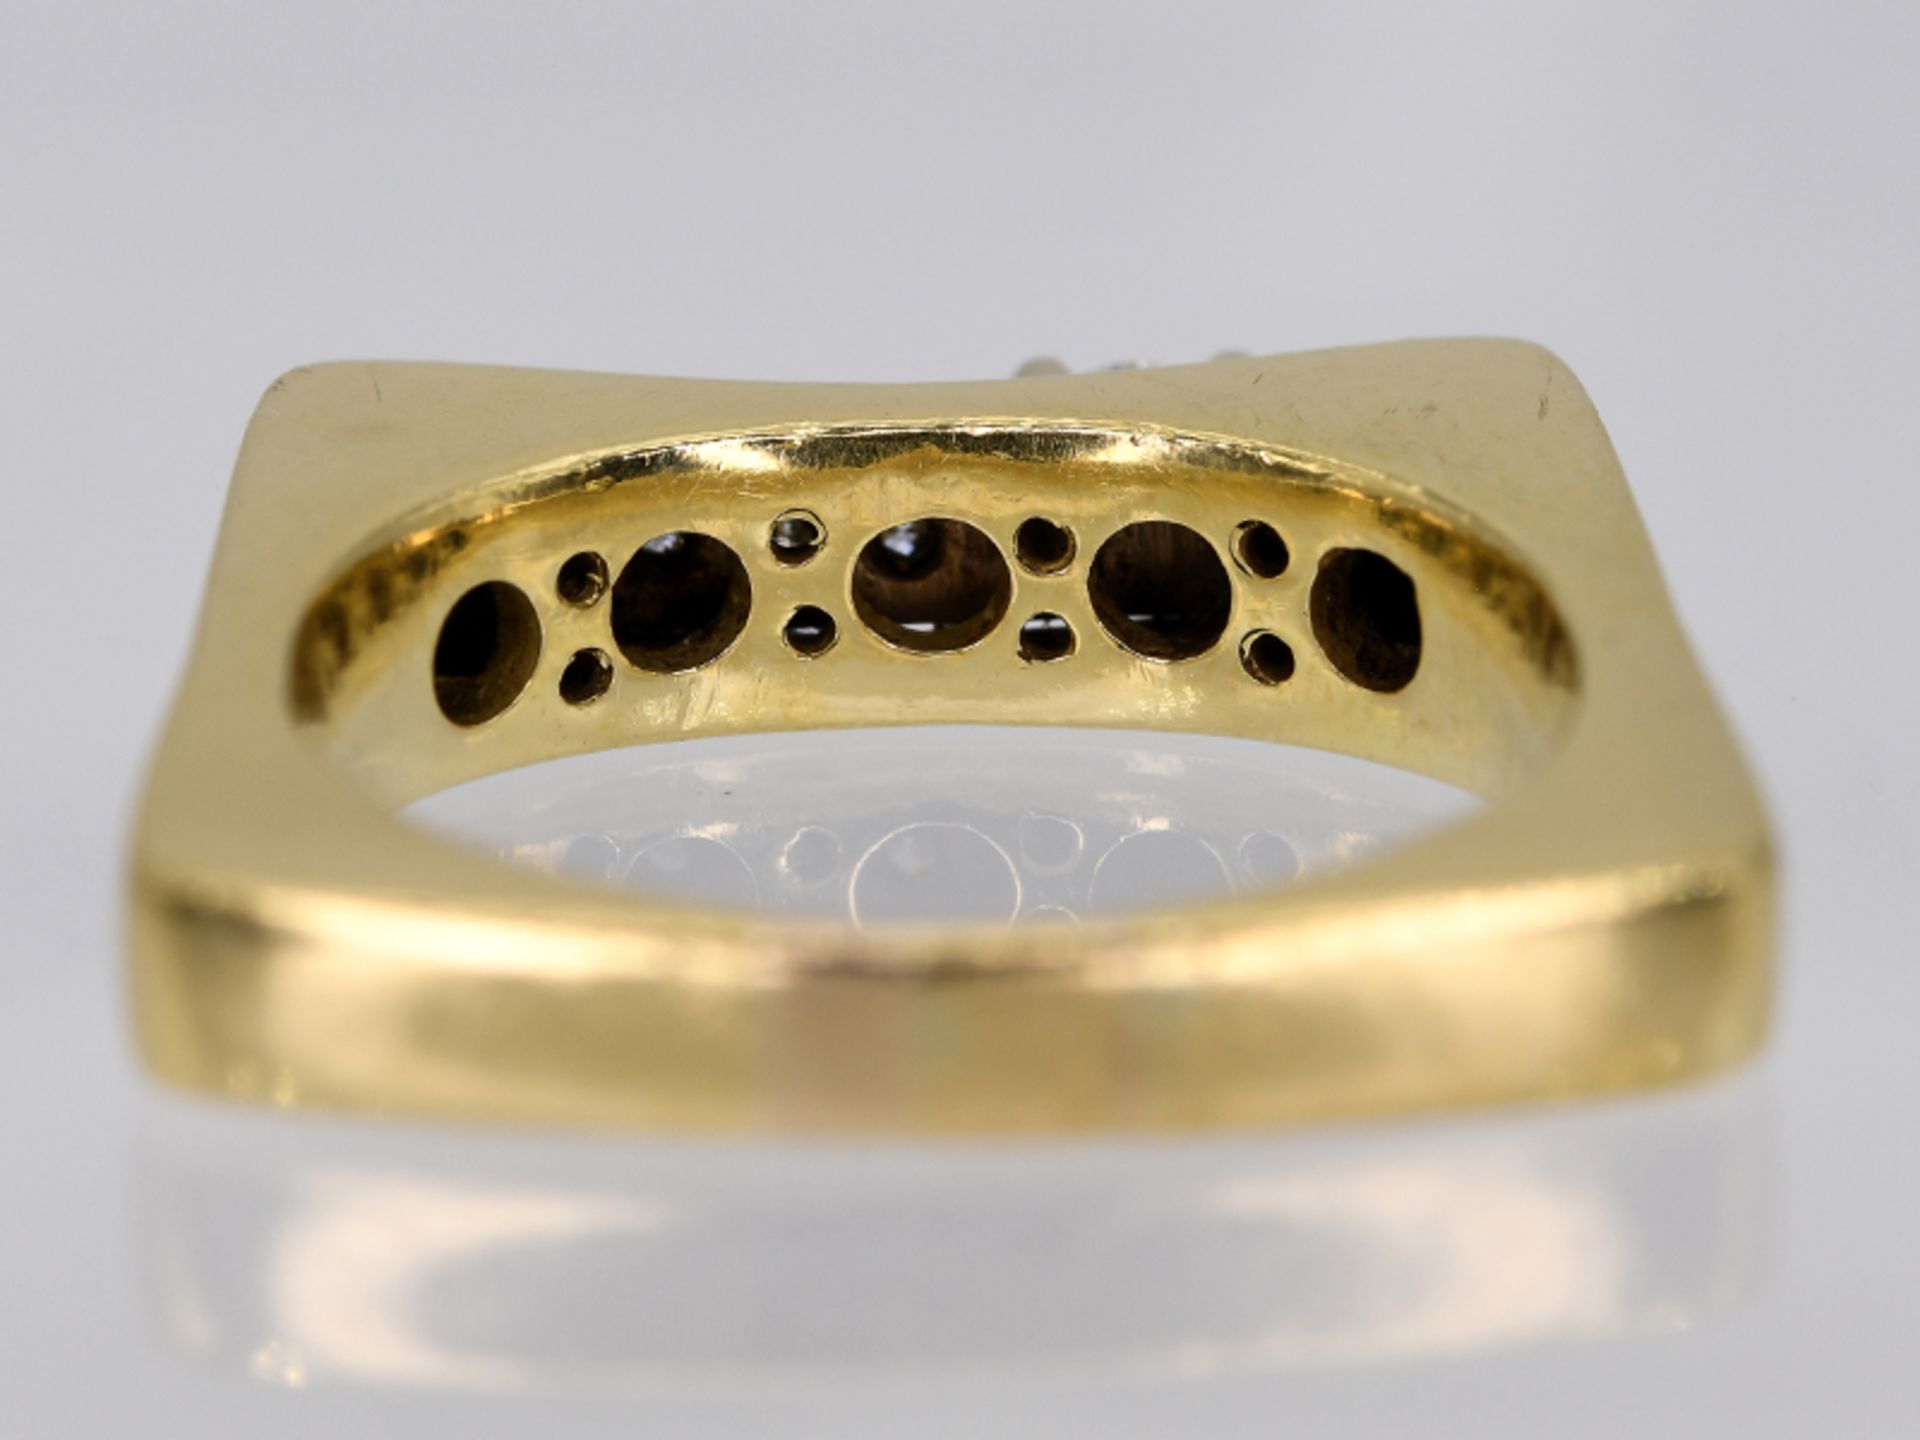 Massiver Ring mit 12 Brillanten, zusammen ca. 0,22 ct, moderne Goldschmiedearbeit, 21. Jh. - Image 2 of 5